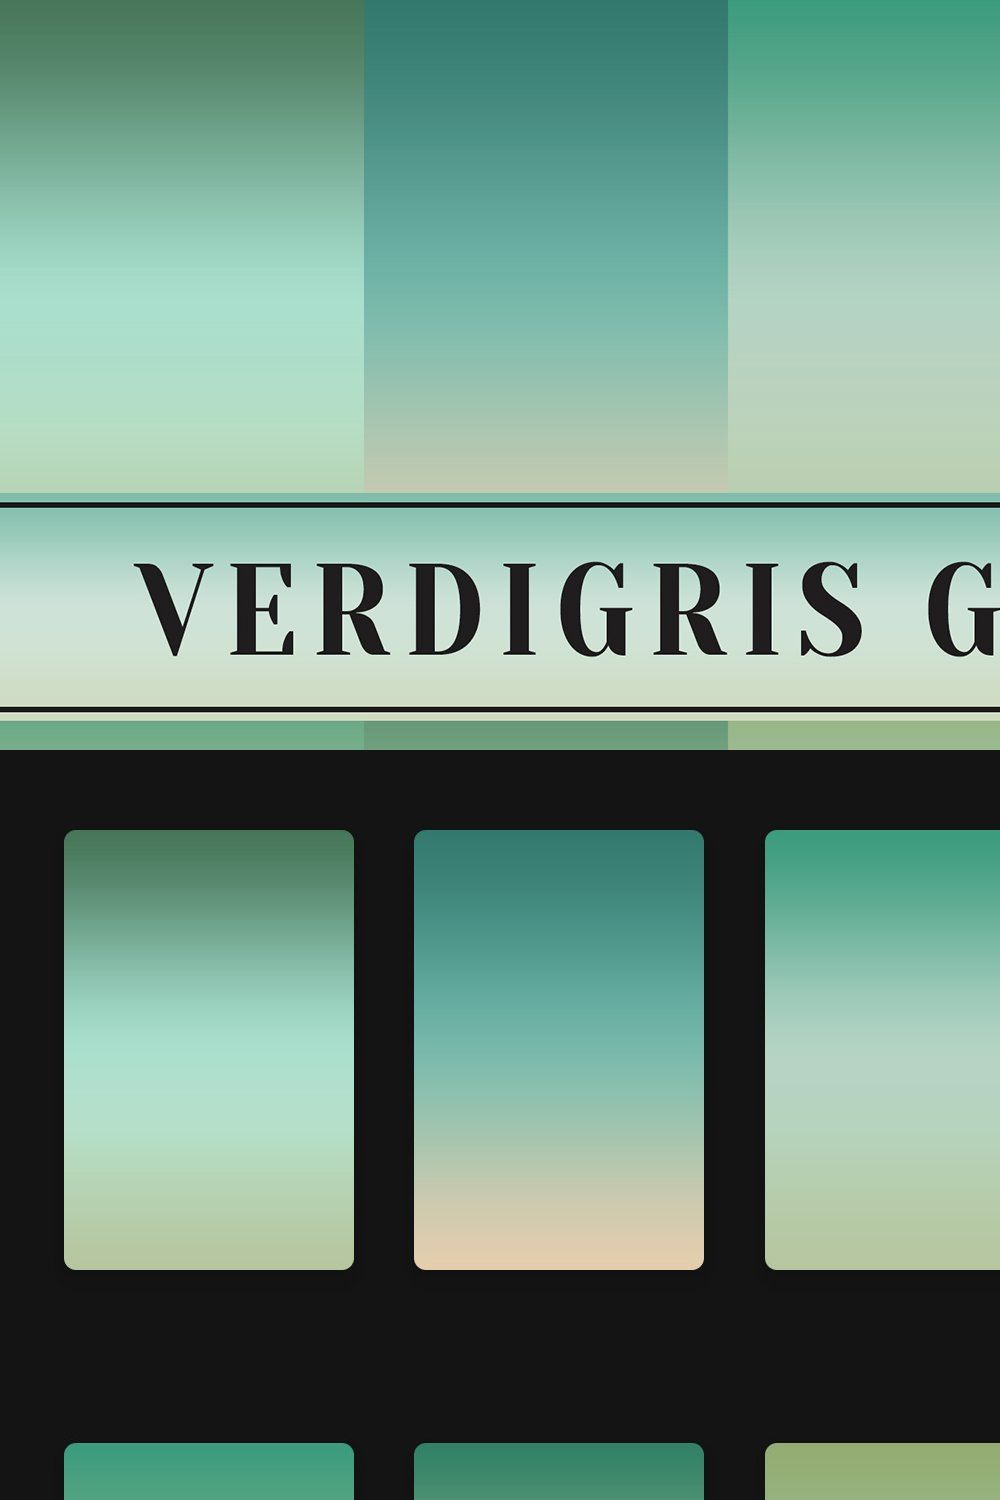 Verdigris Gradients pinterest preview image.